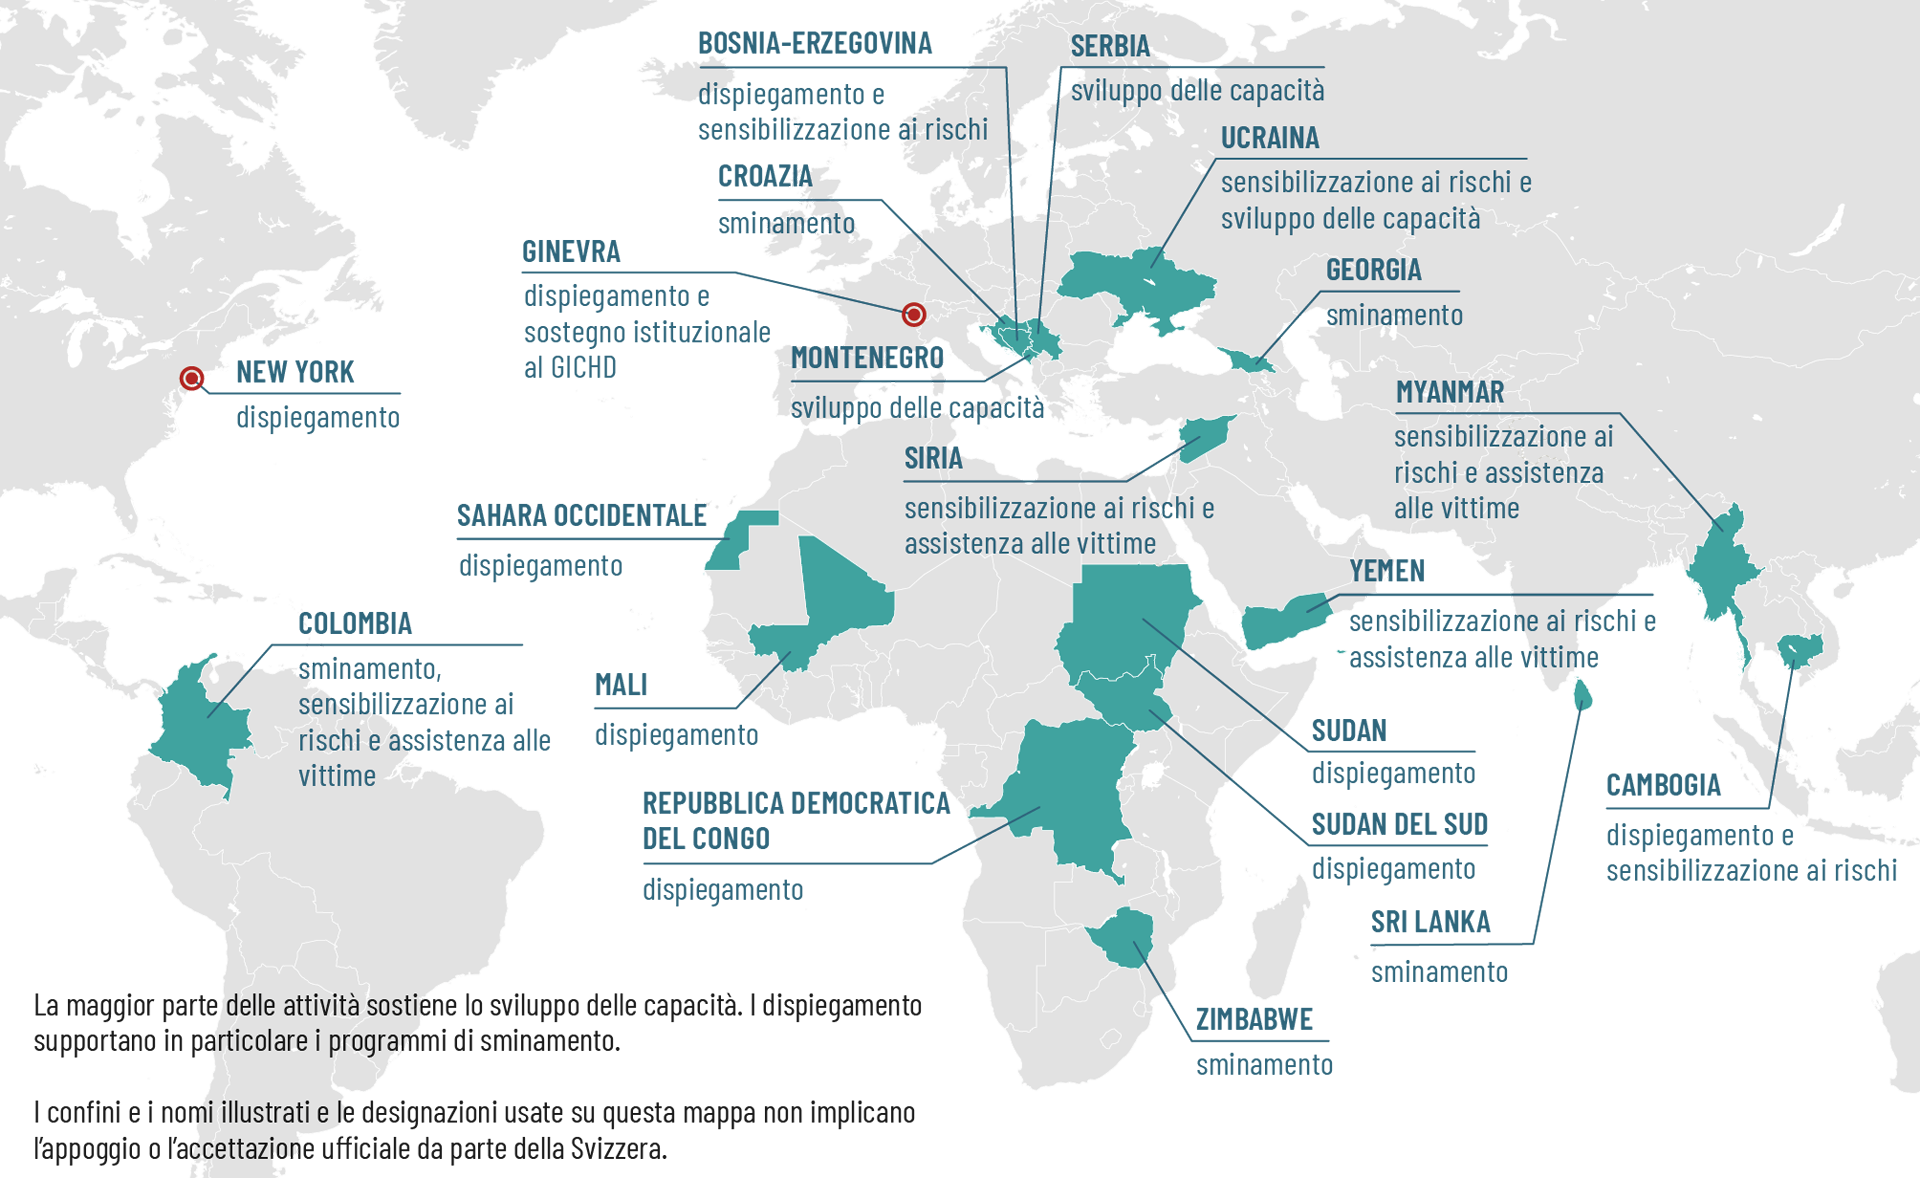 Carta del mondo che mostra i Paesi in cui la Svizzera è attiva nello sminamento umanitario.